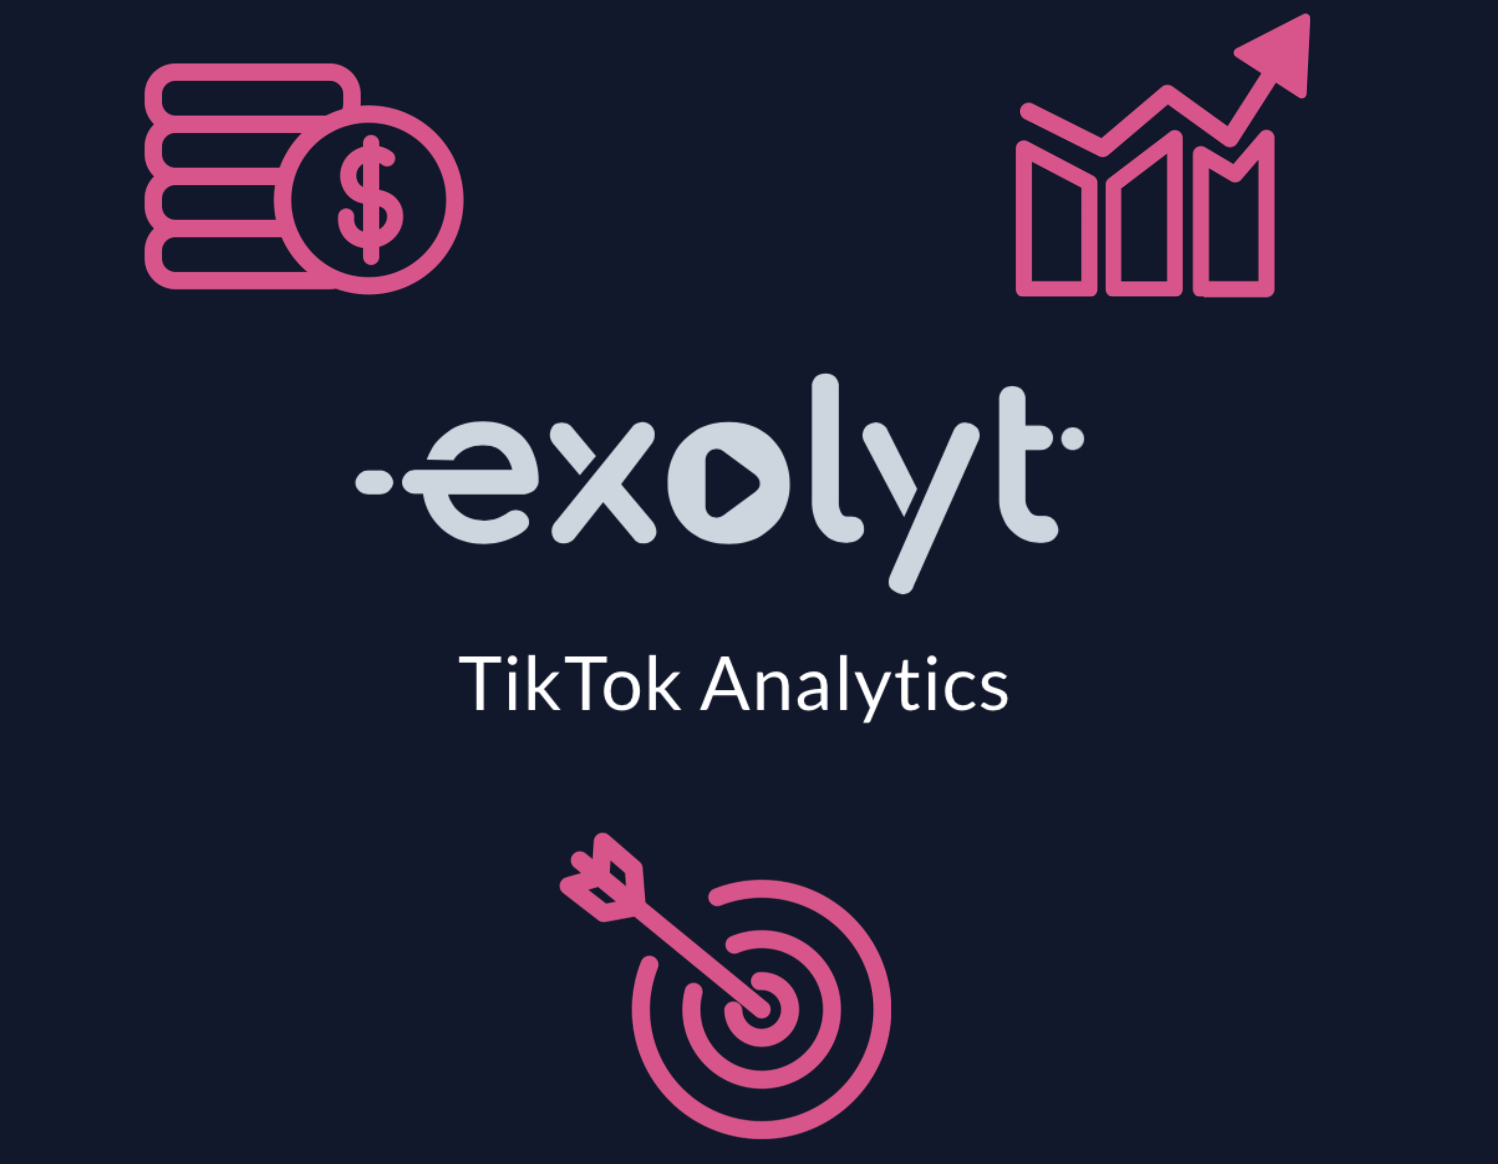 Pourquoi les agences médias devraient utiliser Exolyt pour l'analyse de TikTok